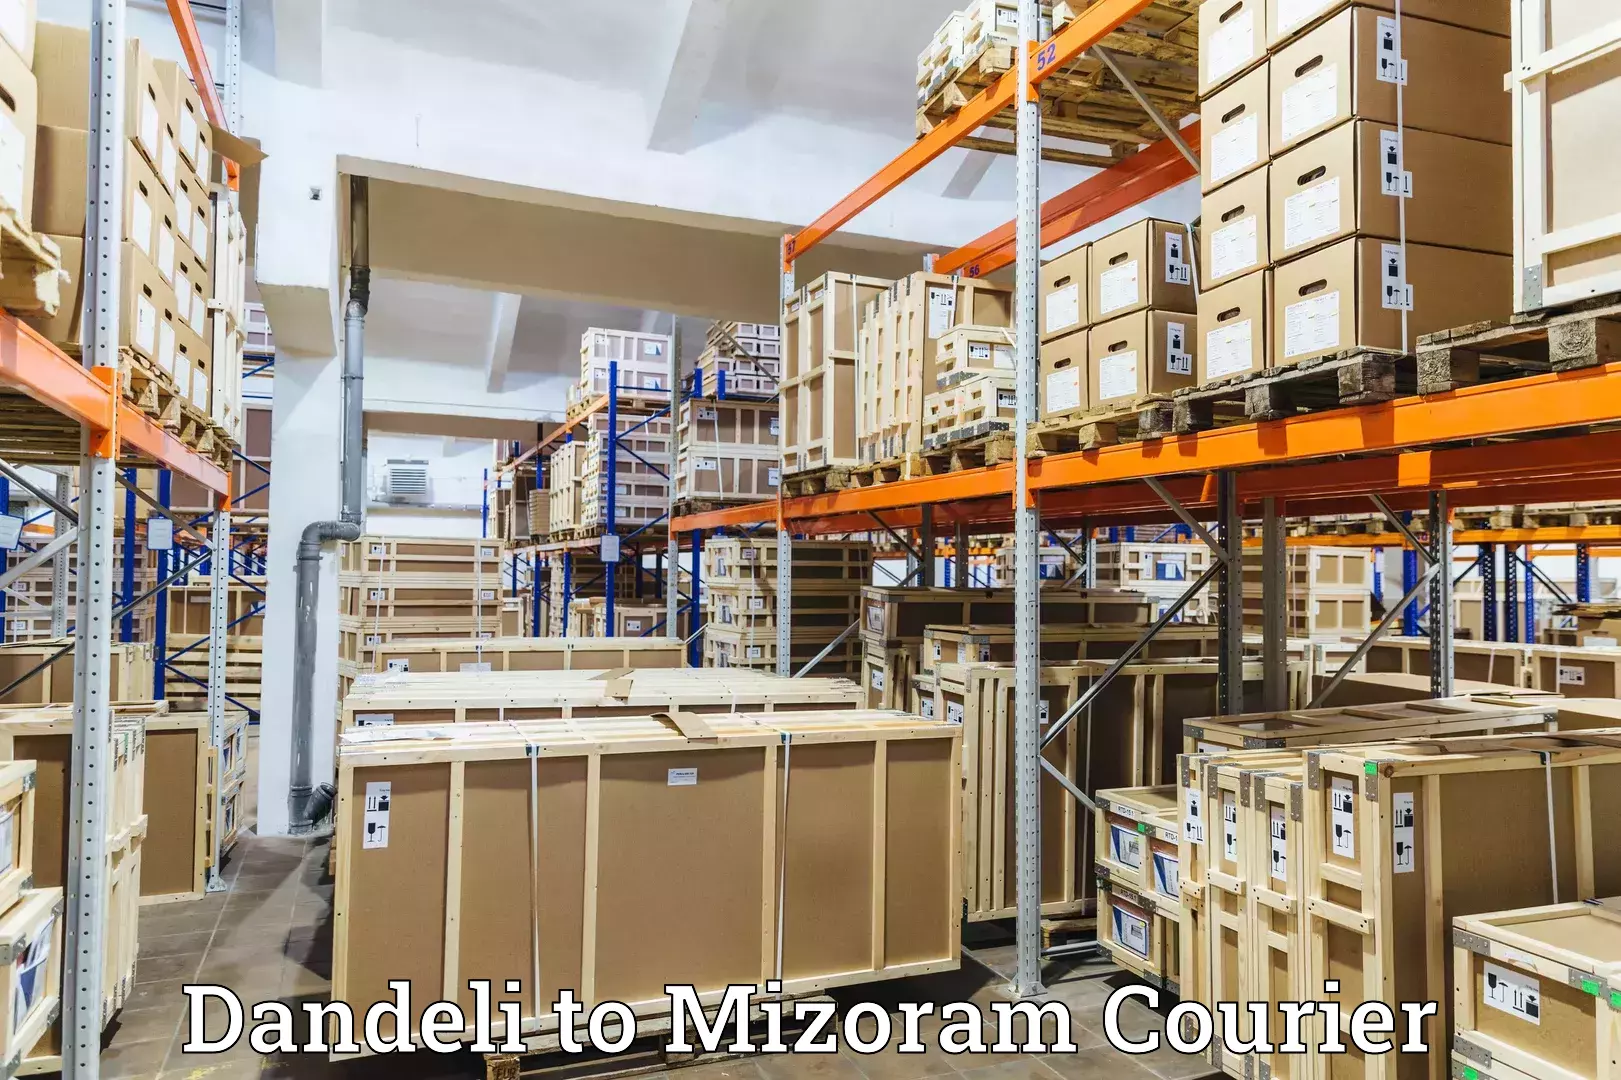 Premium courier services Dandeli to Aizawl